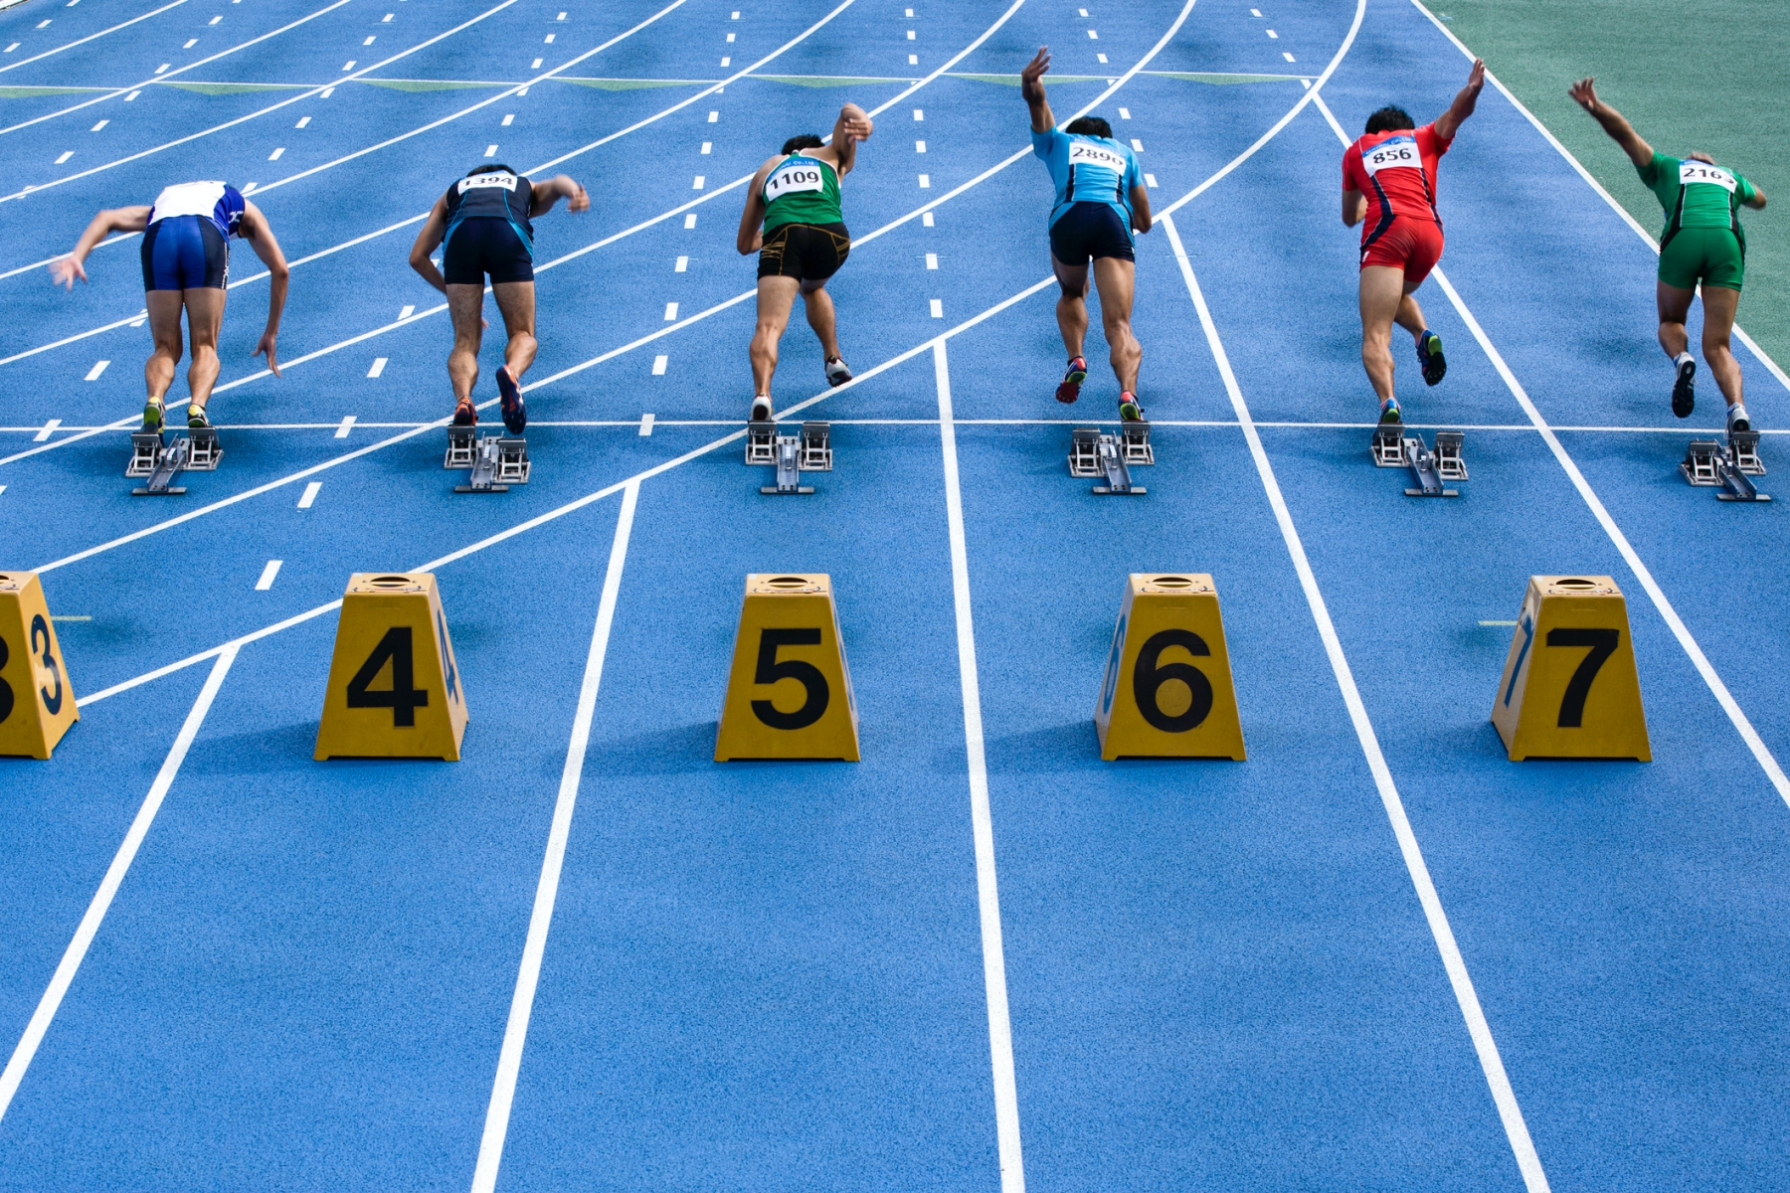 Mennyire ismered az atlétika versenyszámait? – Sportismereti kvíz